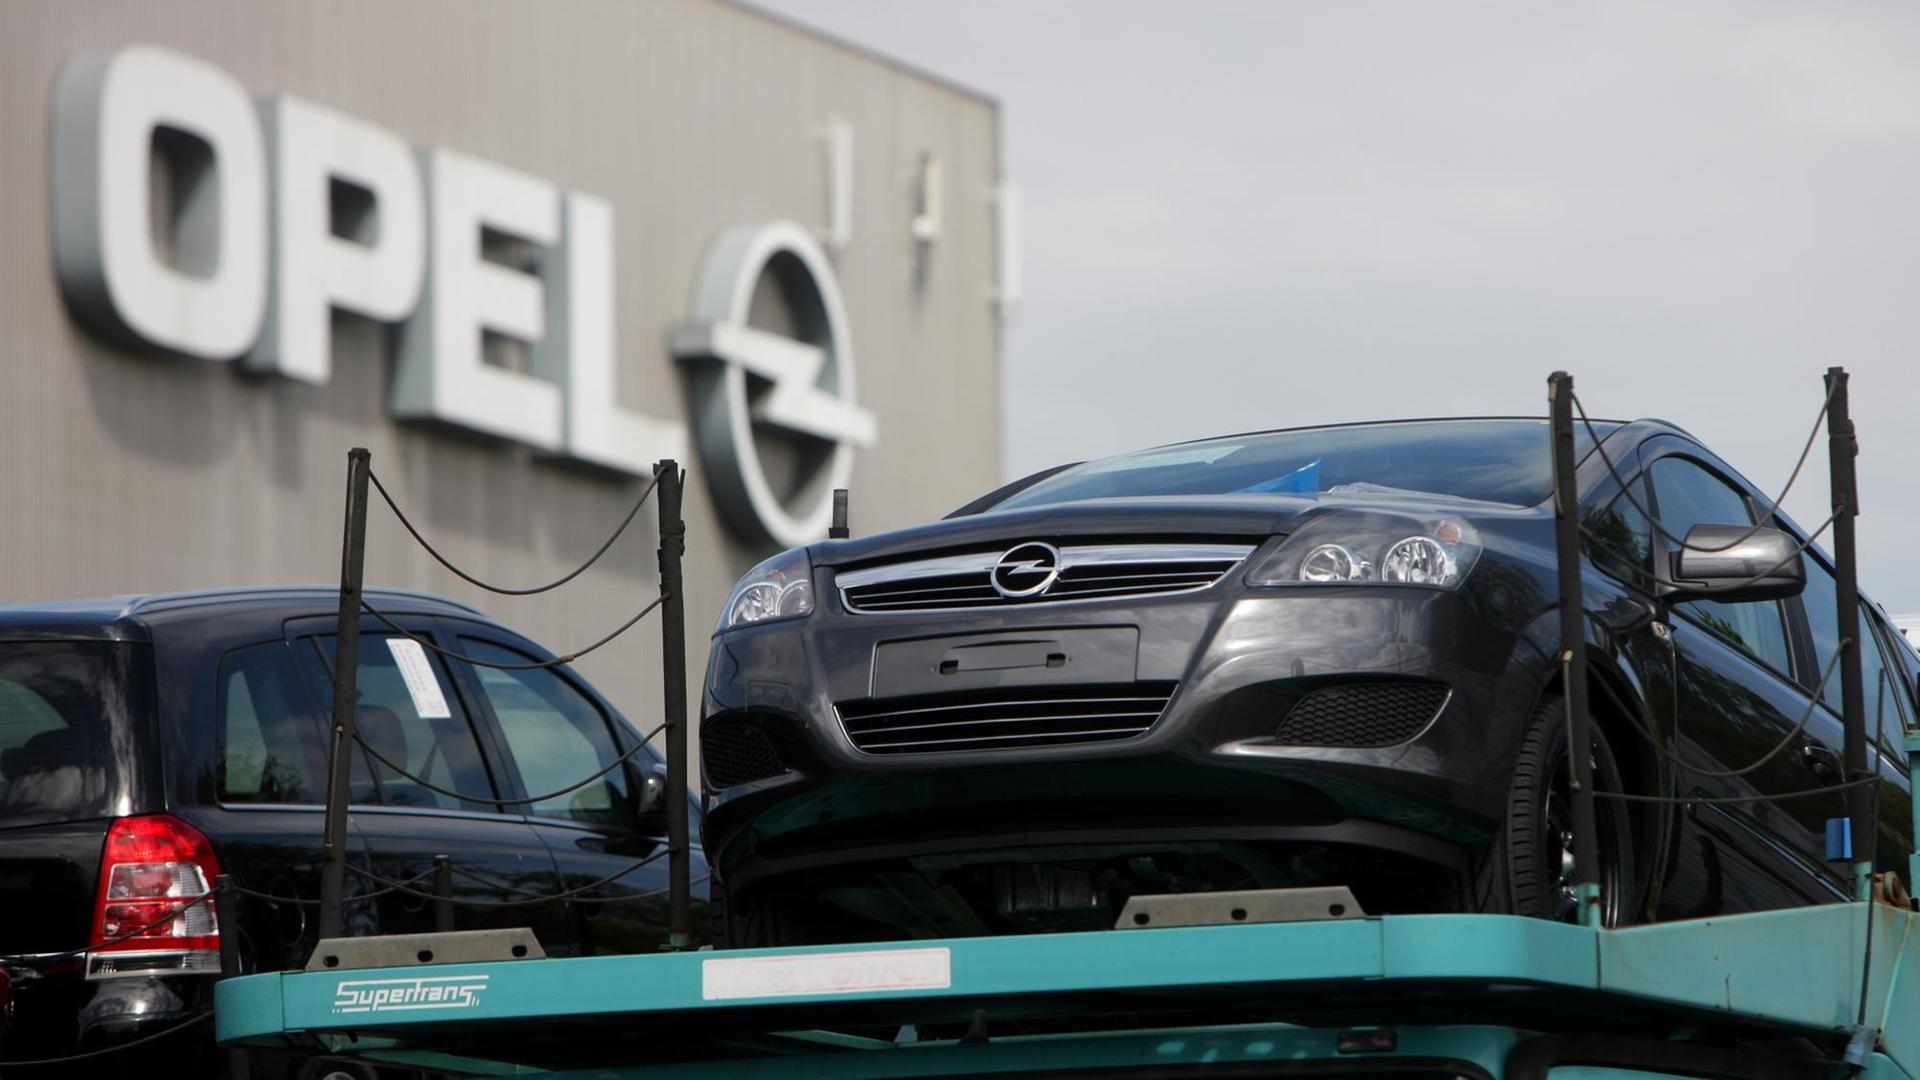 Fahrzeuge vom Typ Zafira werden am Freitag (18.05.2012) im Opel Werk in Bochum verladen. Opel baut das Erfolgsmodell Astra k